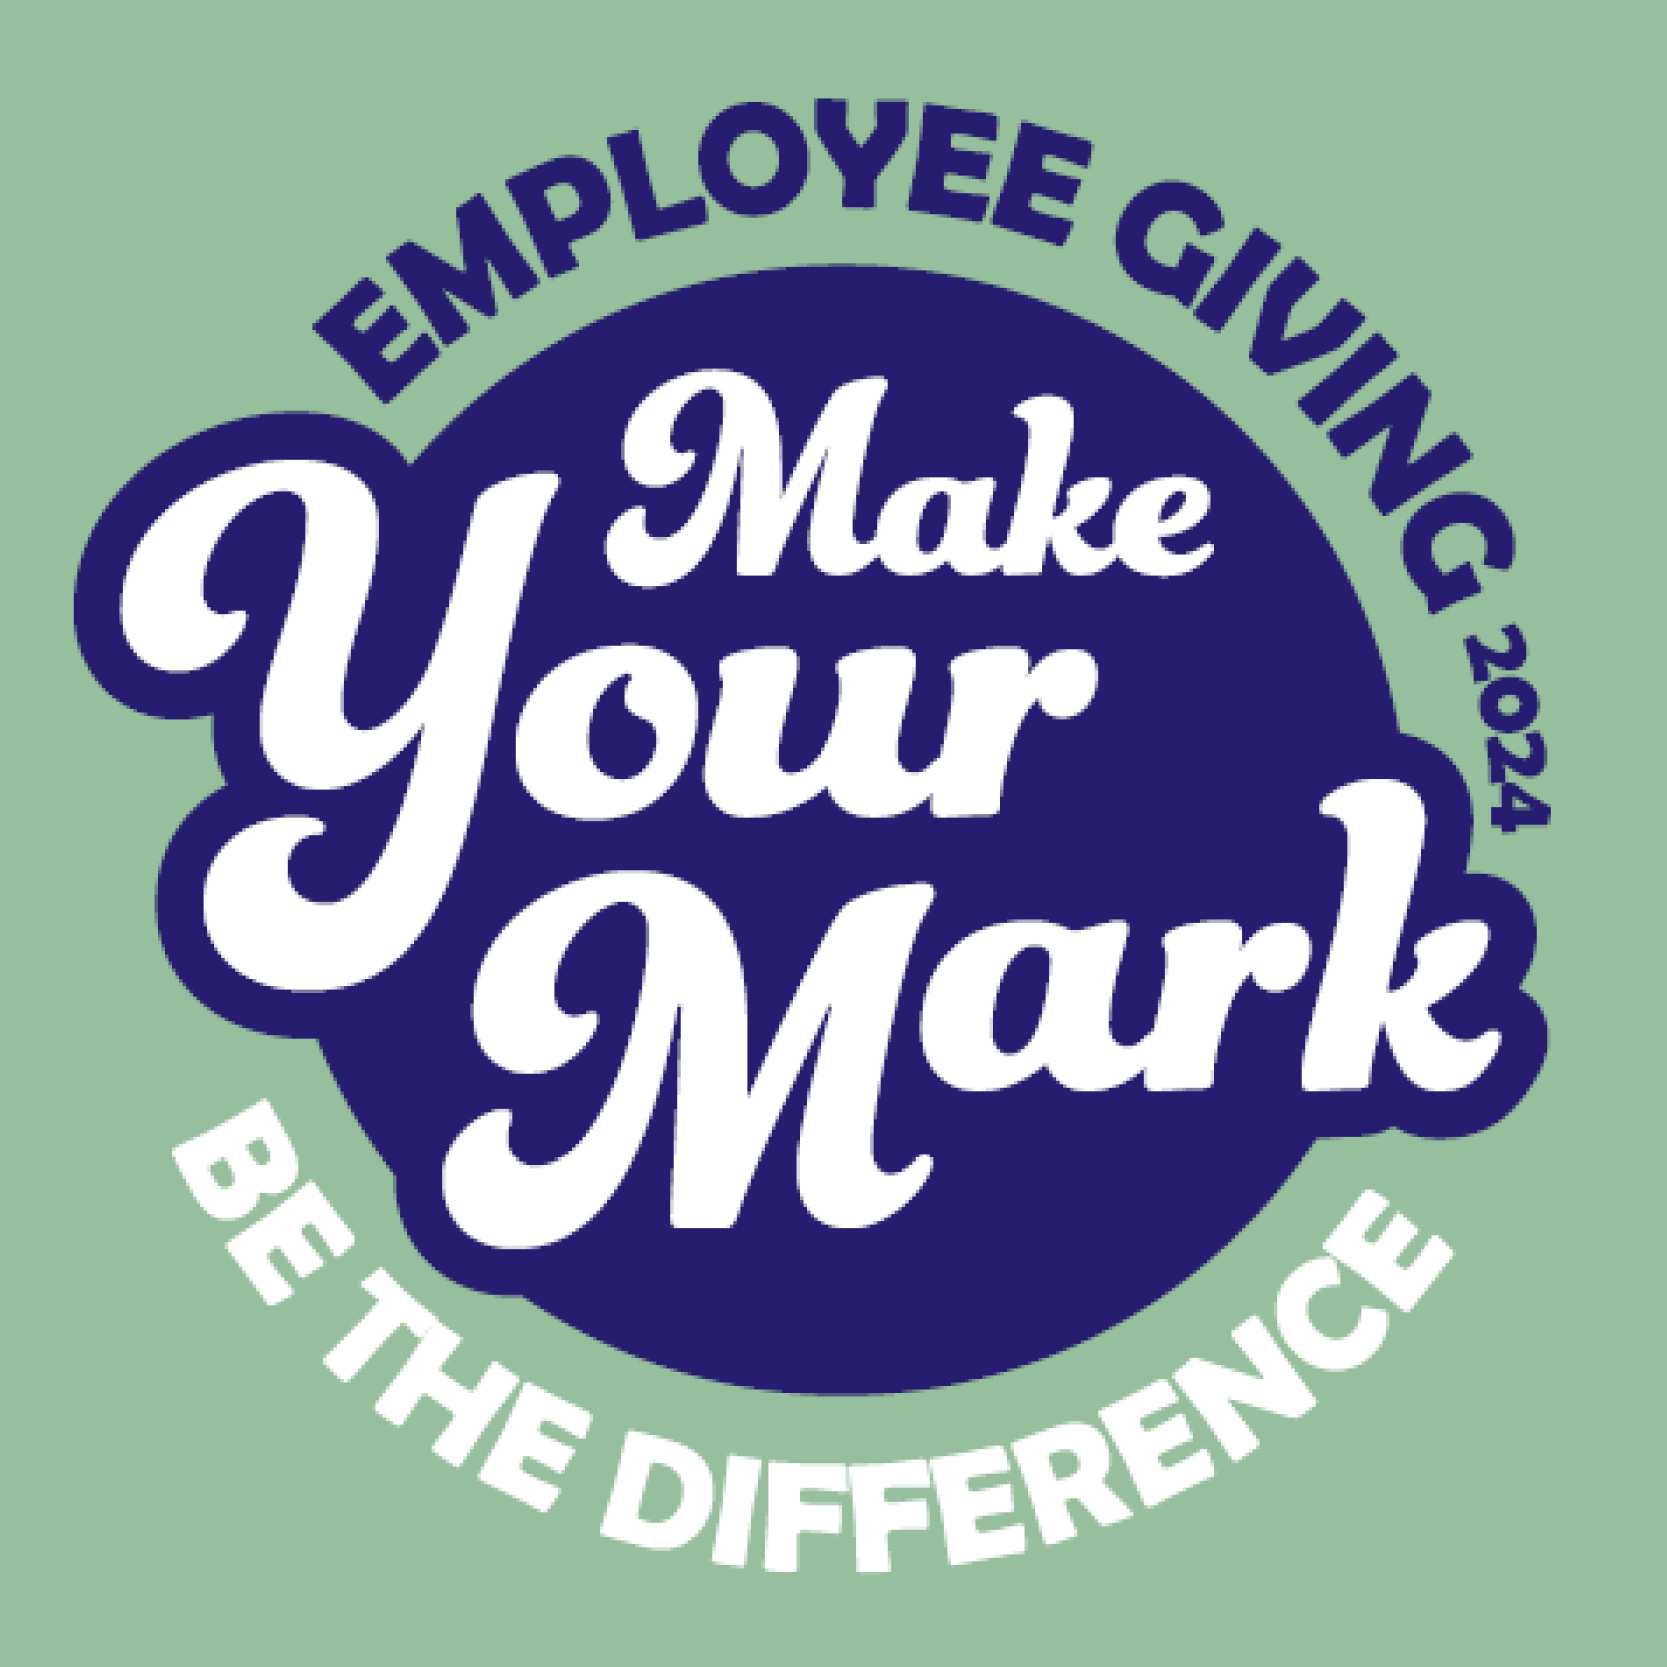 Logotipo de la campaña de donaciones de empleados